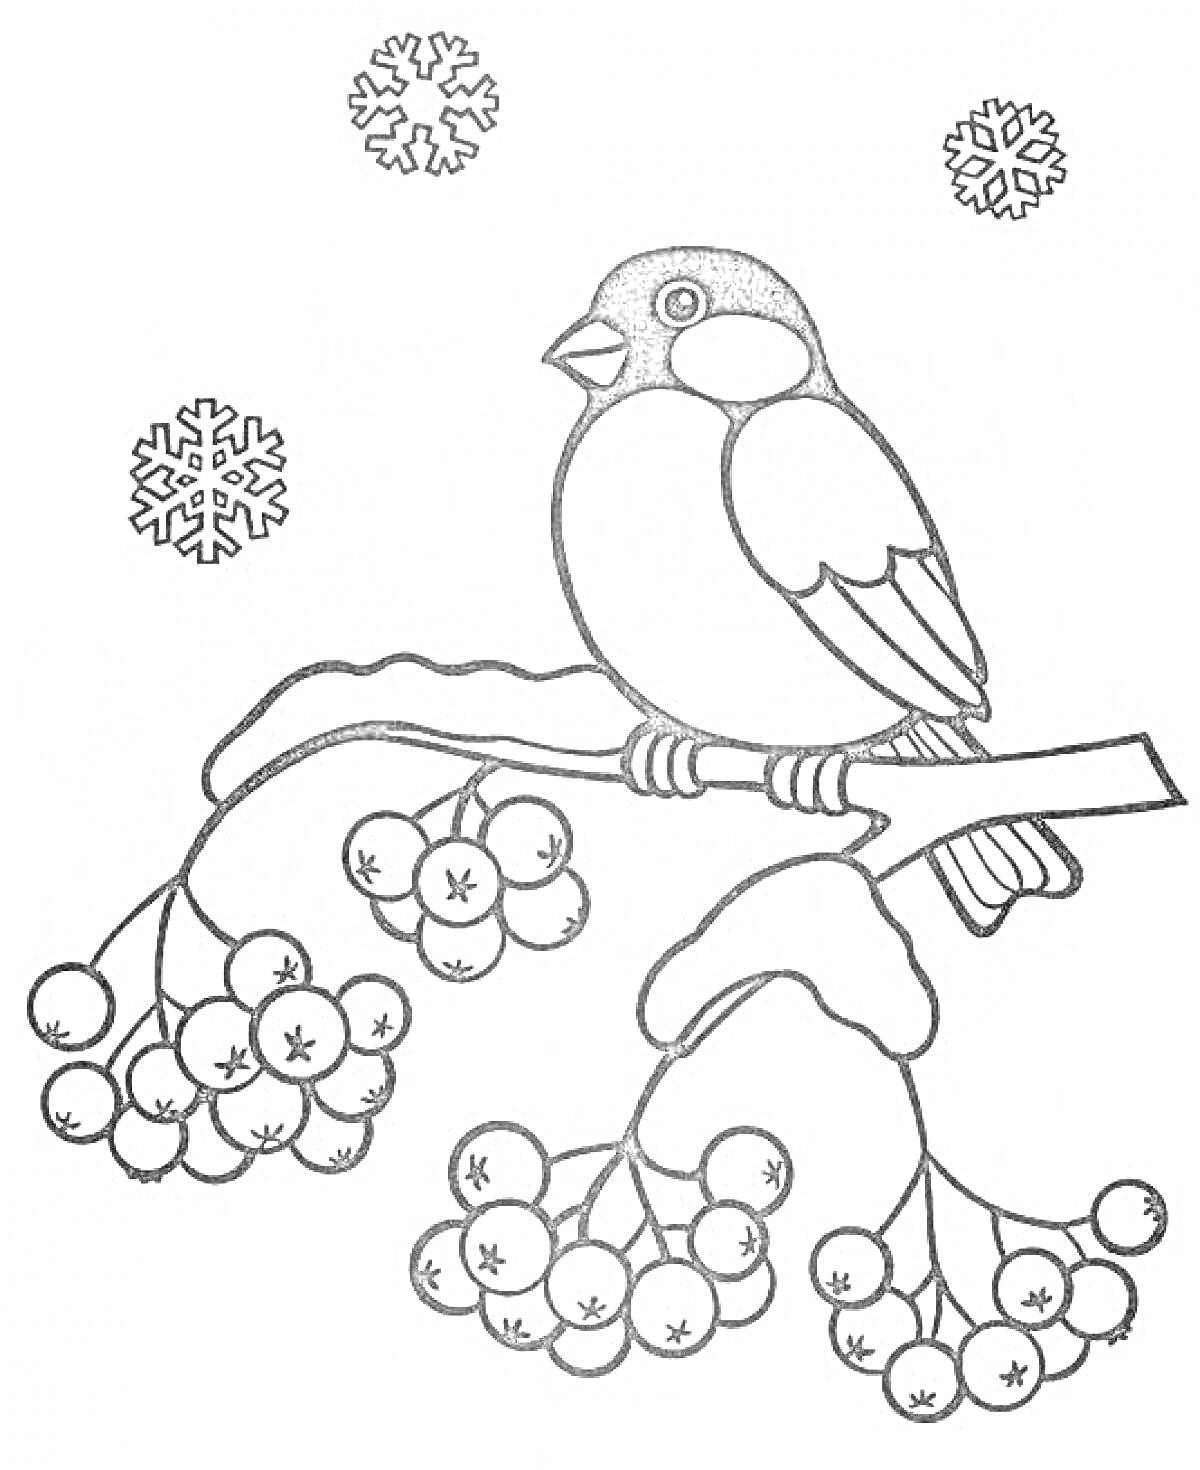 Раскраска Снегирь на ветке рябины с ягодами и снежинками